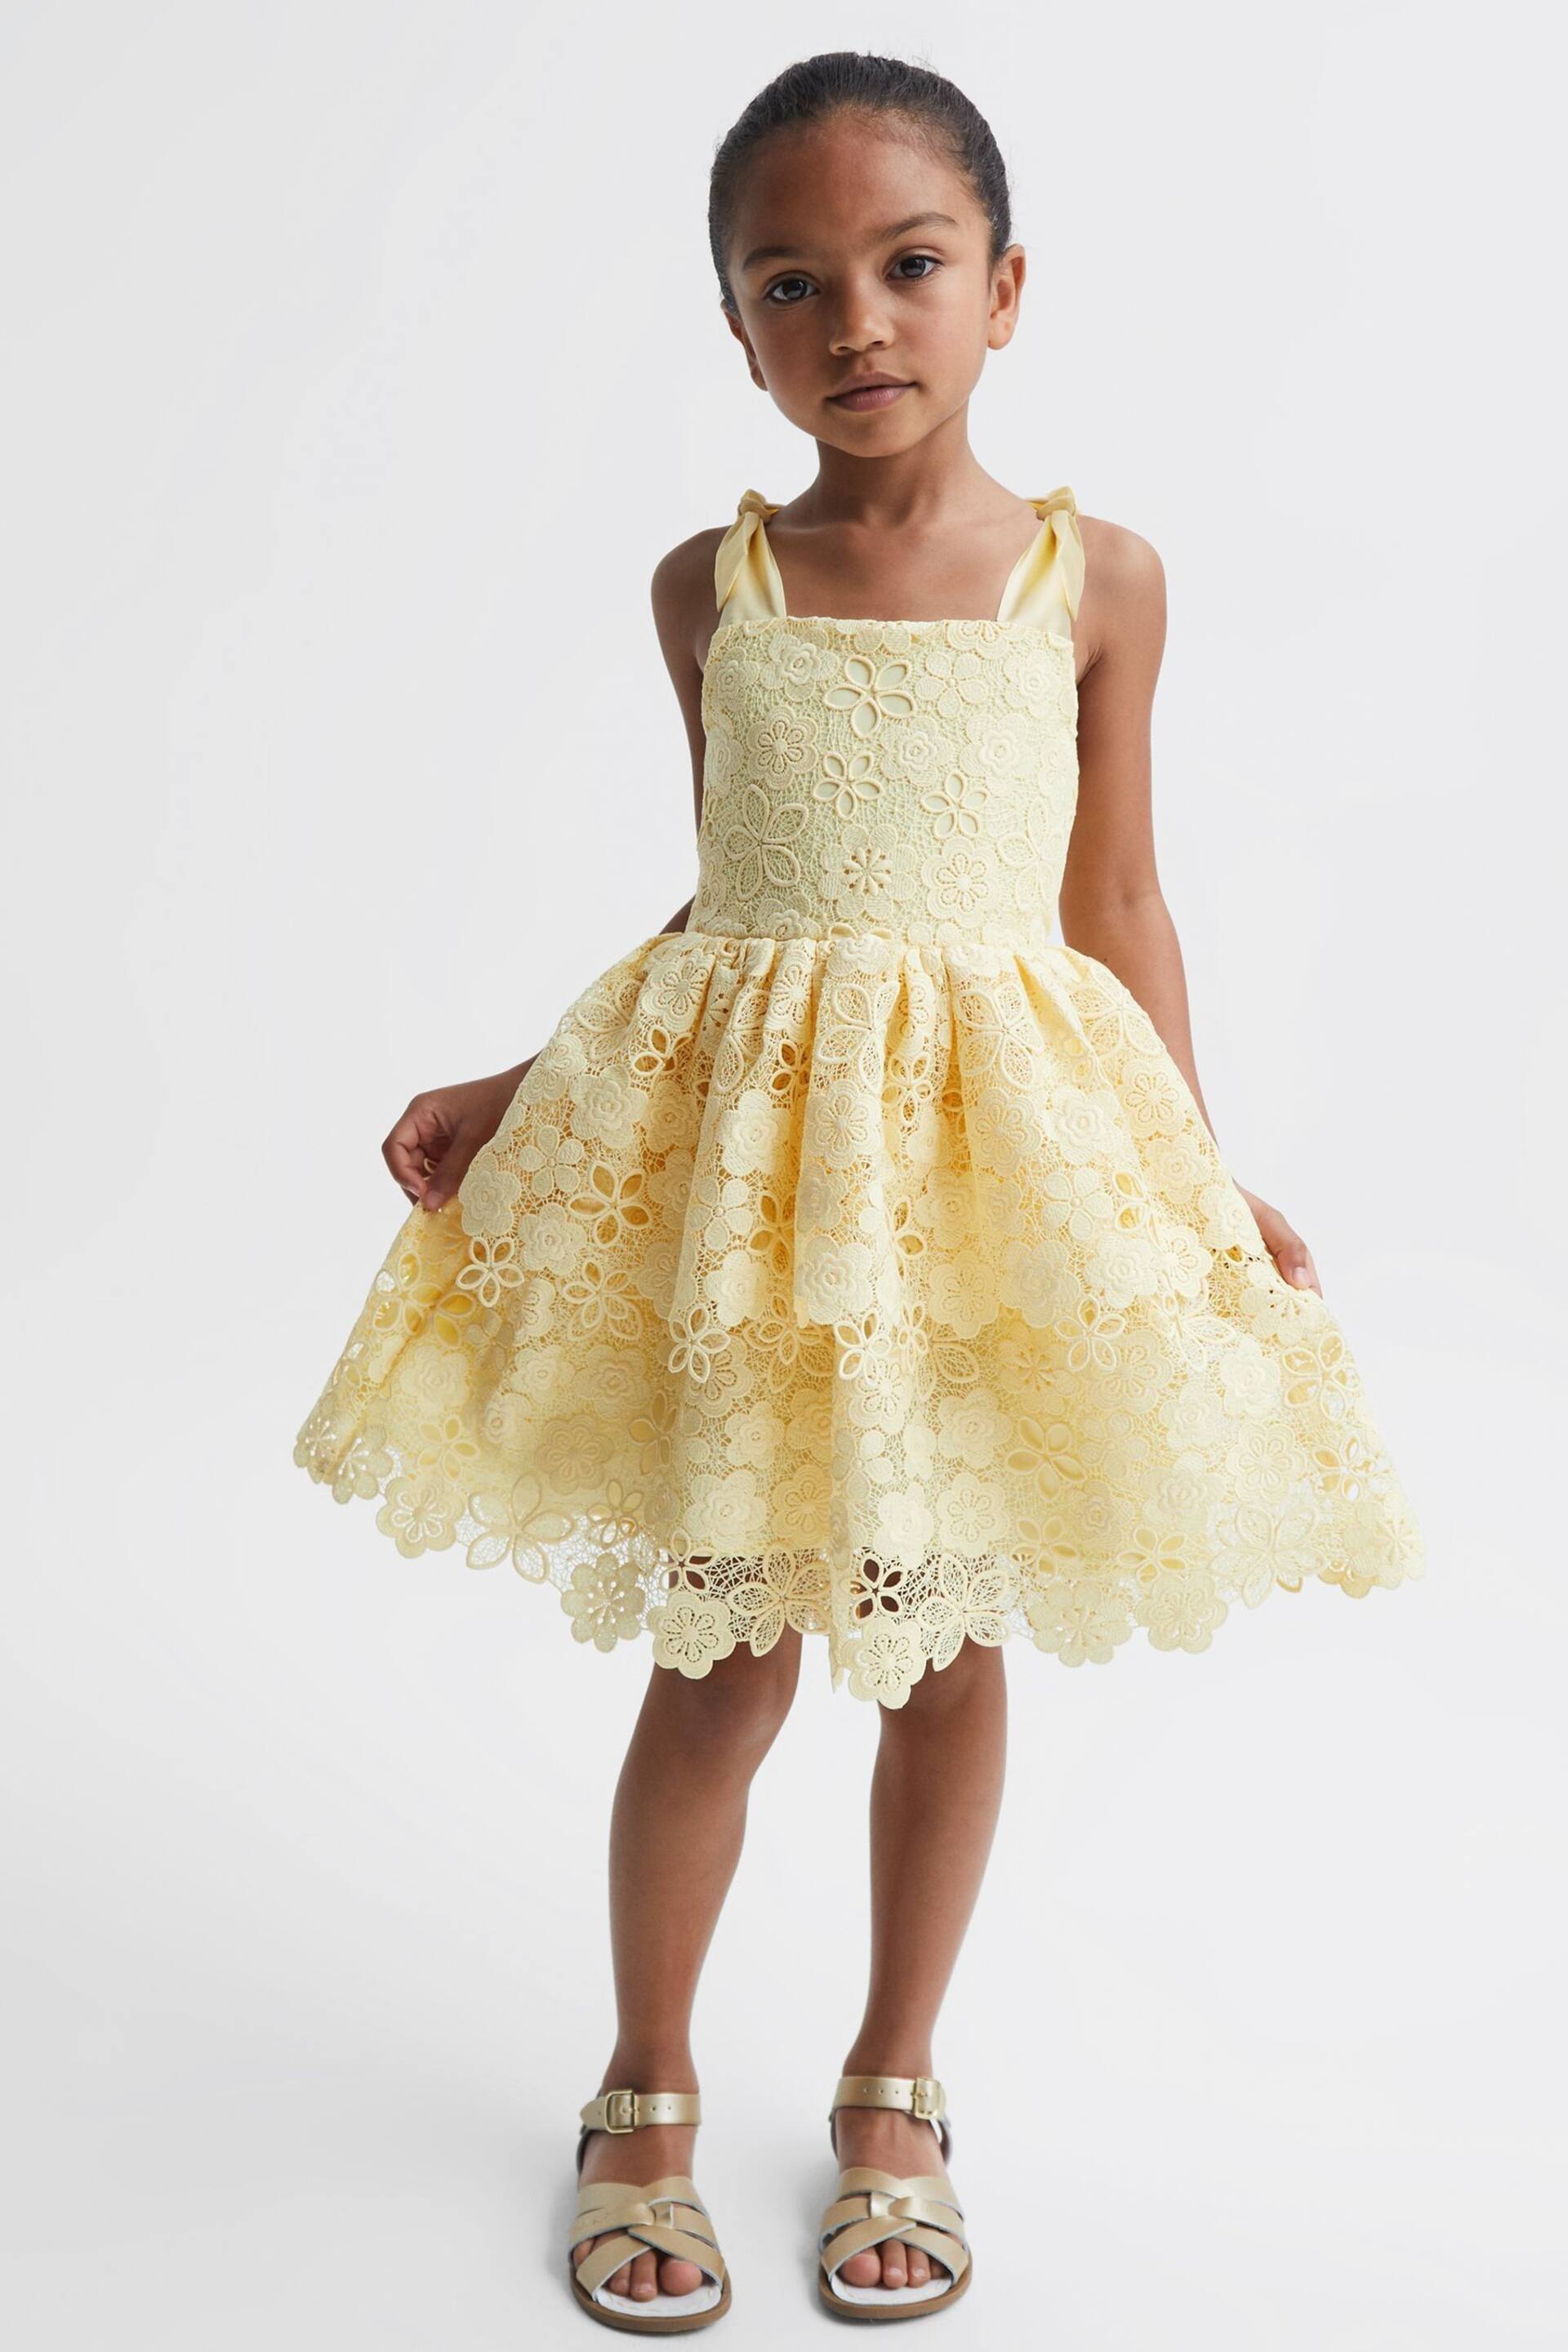 Reiss Lemon Bethany Senior Bow Strap Lace Dress - Image 1 of 6